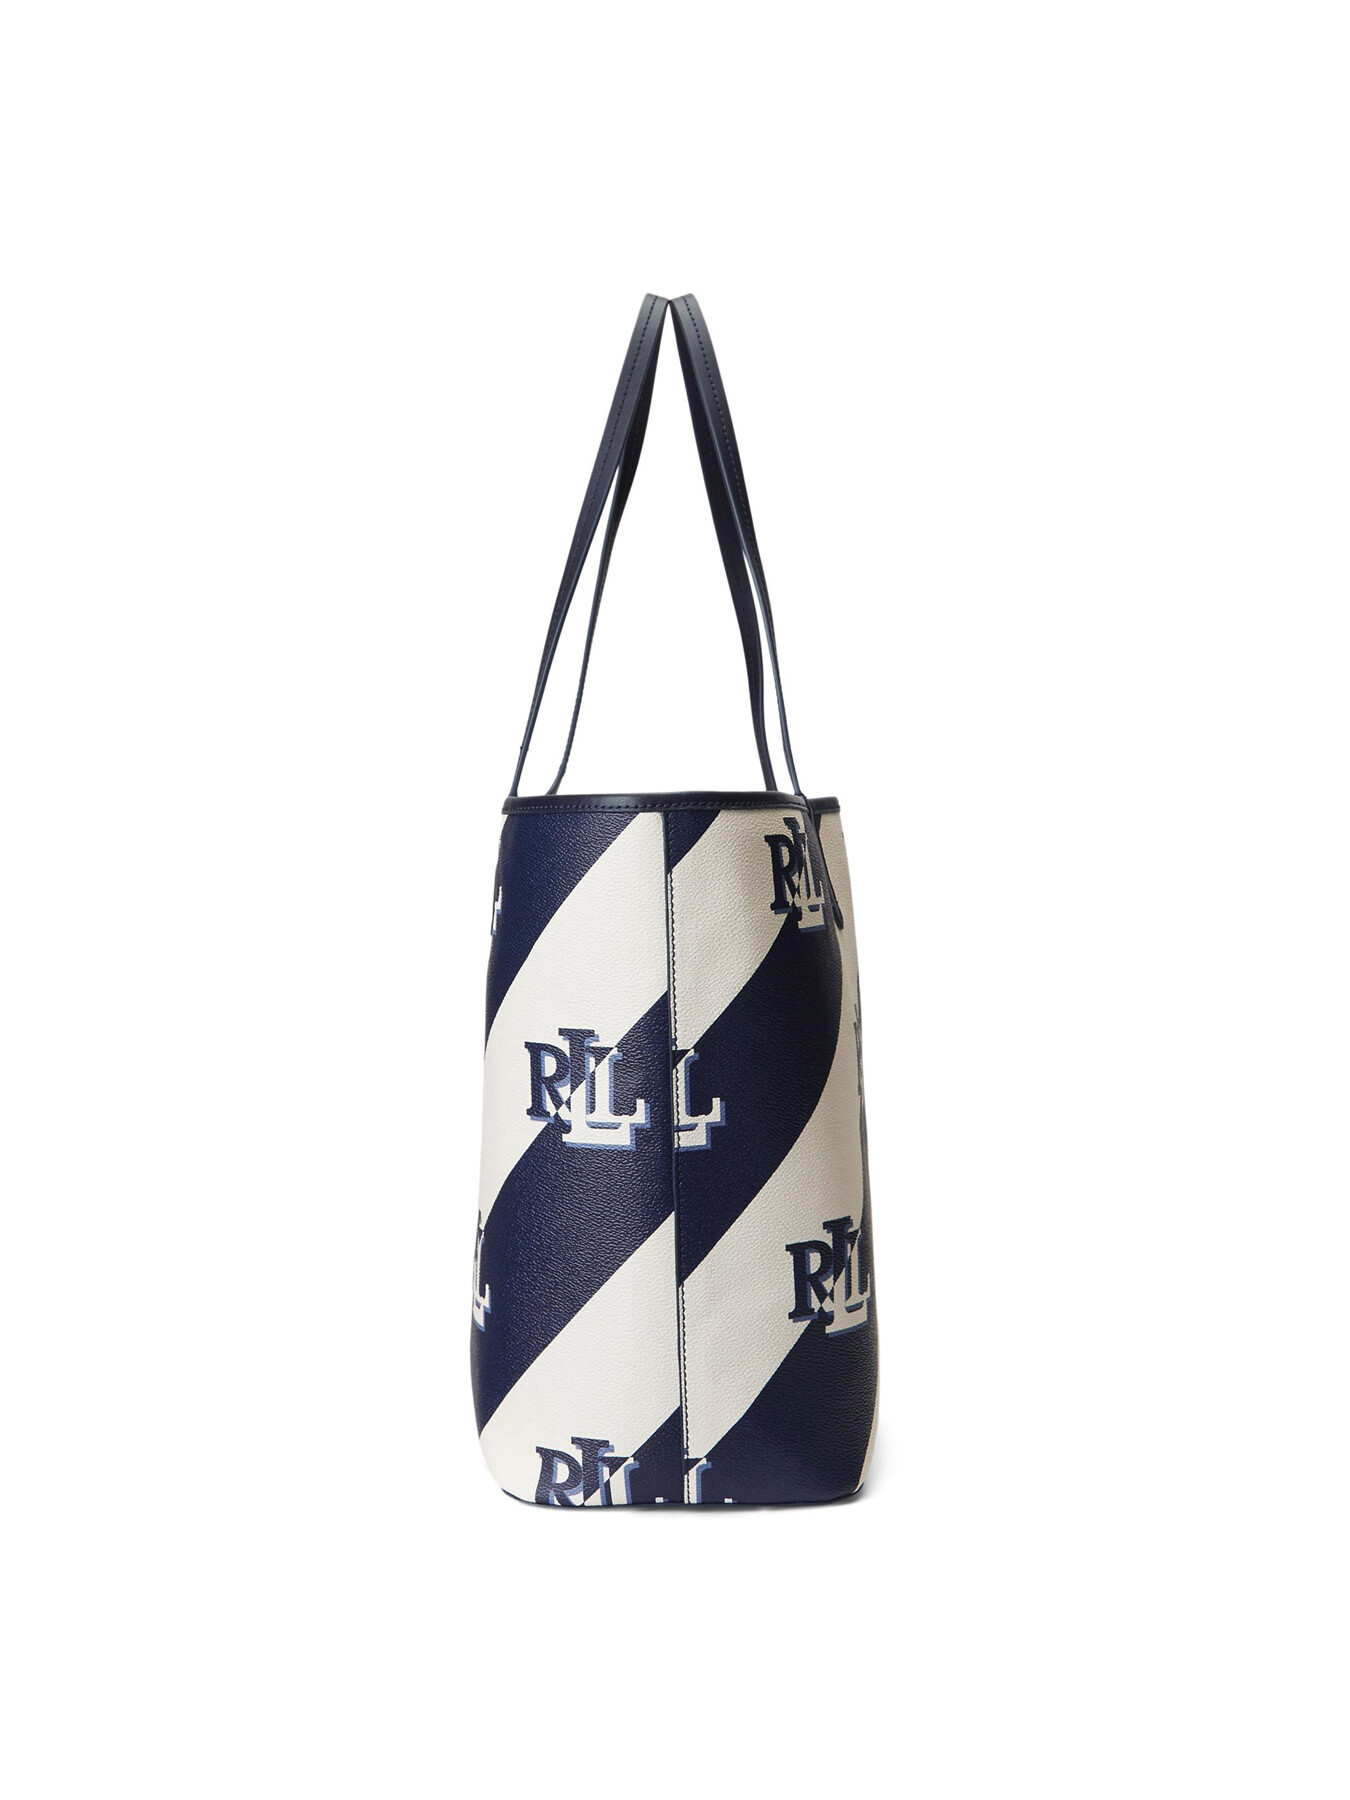 Lauren Ralph Lauren Geometric Bags & Handbags for Women for sale | eBay